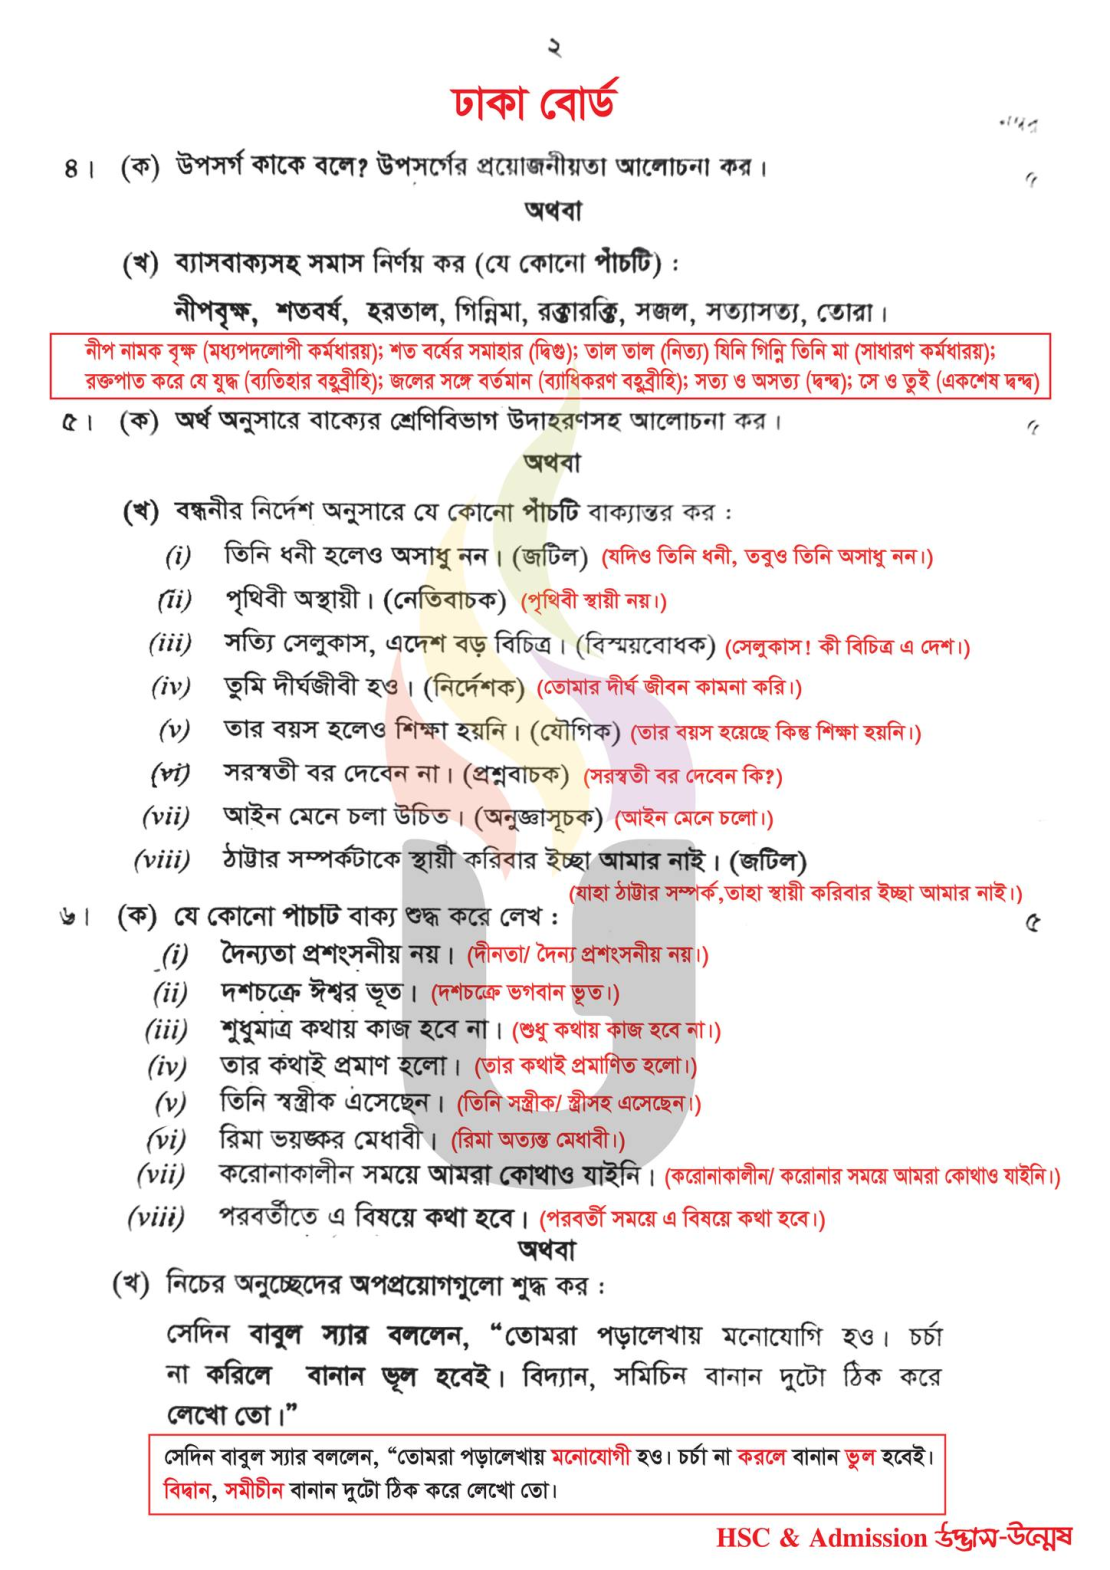 dhaka ban 2nd - 2